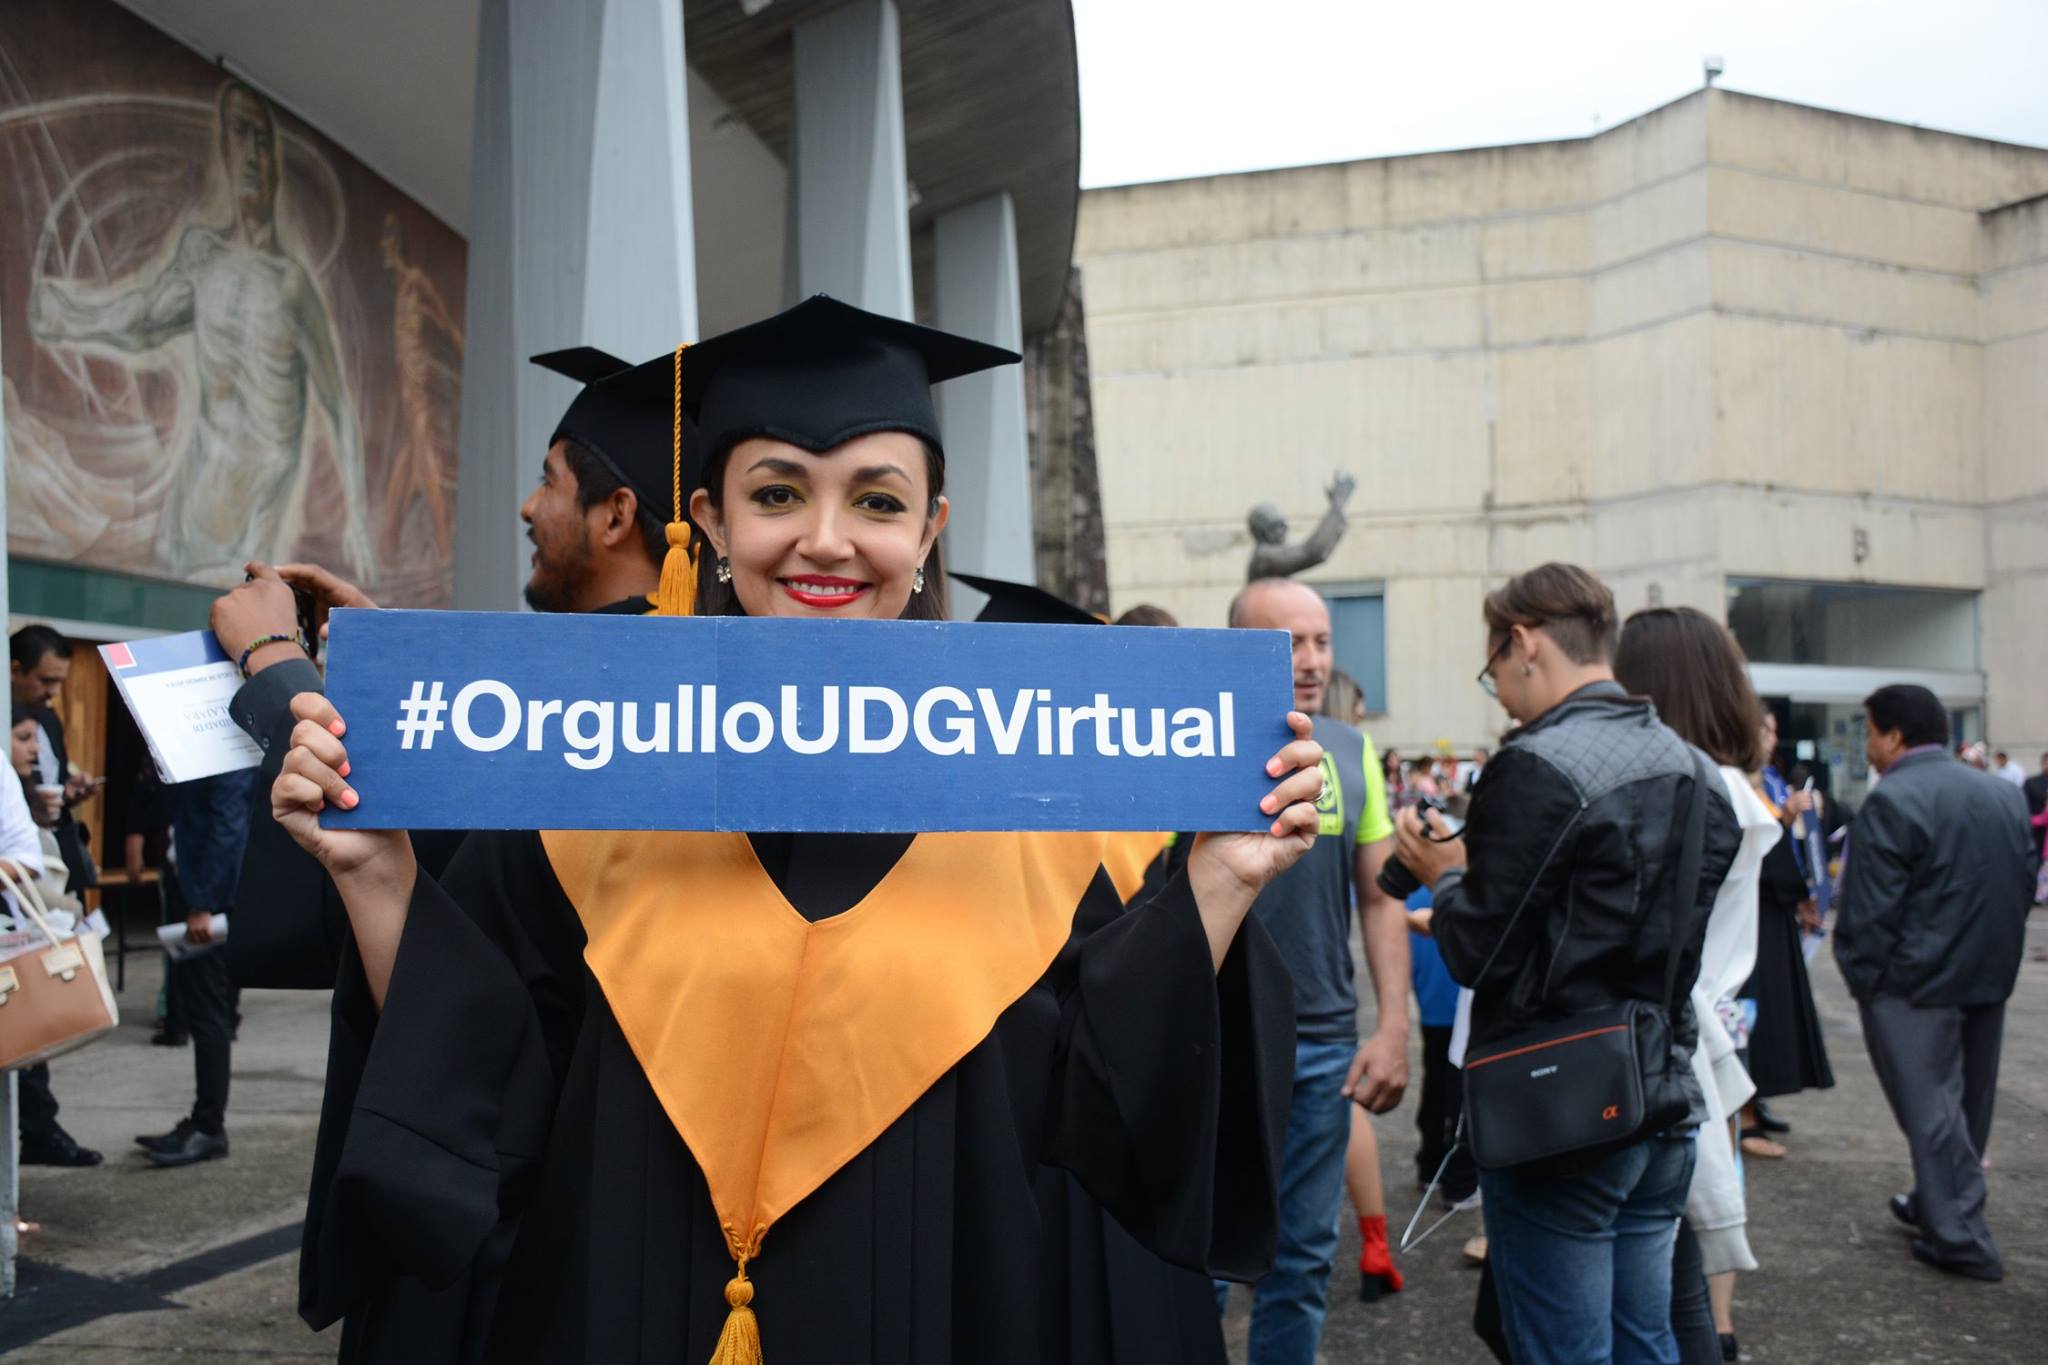 Las personas interesadas en estudiar en la Universidad de Guadalajara en modalidad virtual pueden consultar la información en www.udgvirtual.udg.mx